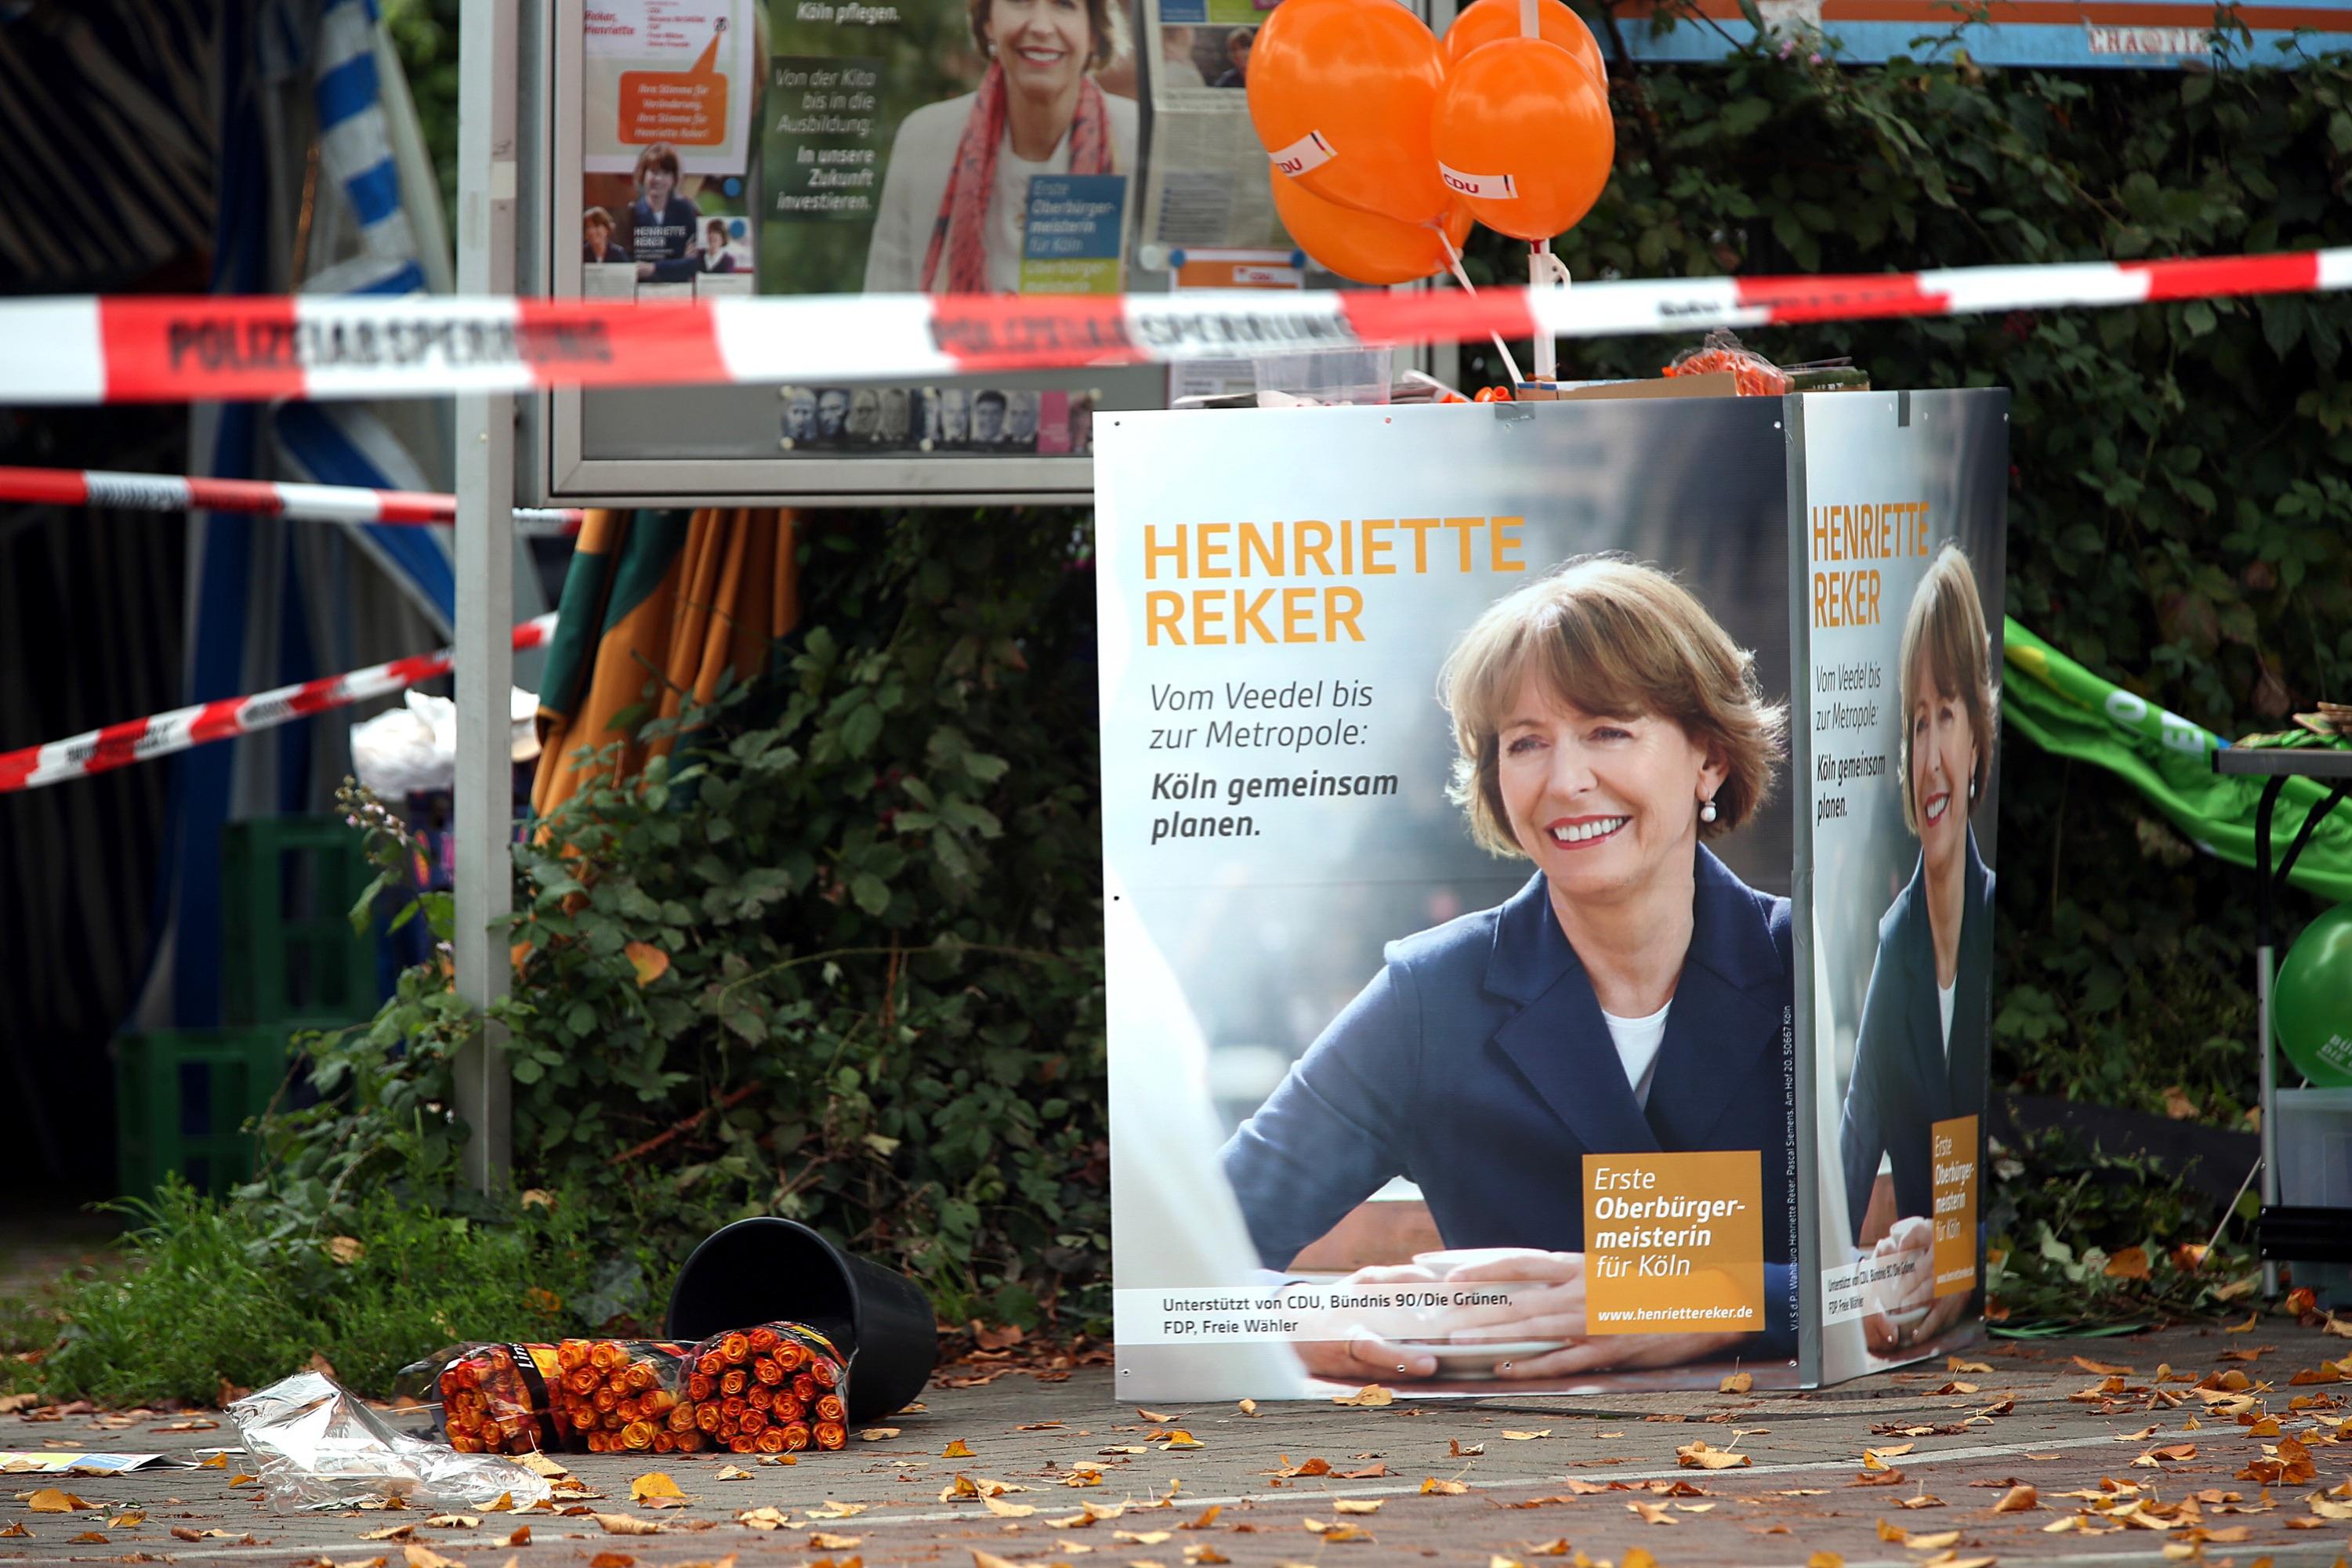 Sidste lørdag blev borgmesterkandidat Henriette Reker stukket ned i Köln. Dagen efter kunne hun fra intensivafdelingen konstatere, at hun fik 52,7 procent af stemmerne.
Foto: Oliver Berg / Polfoto